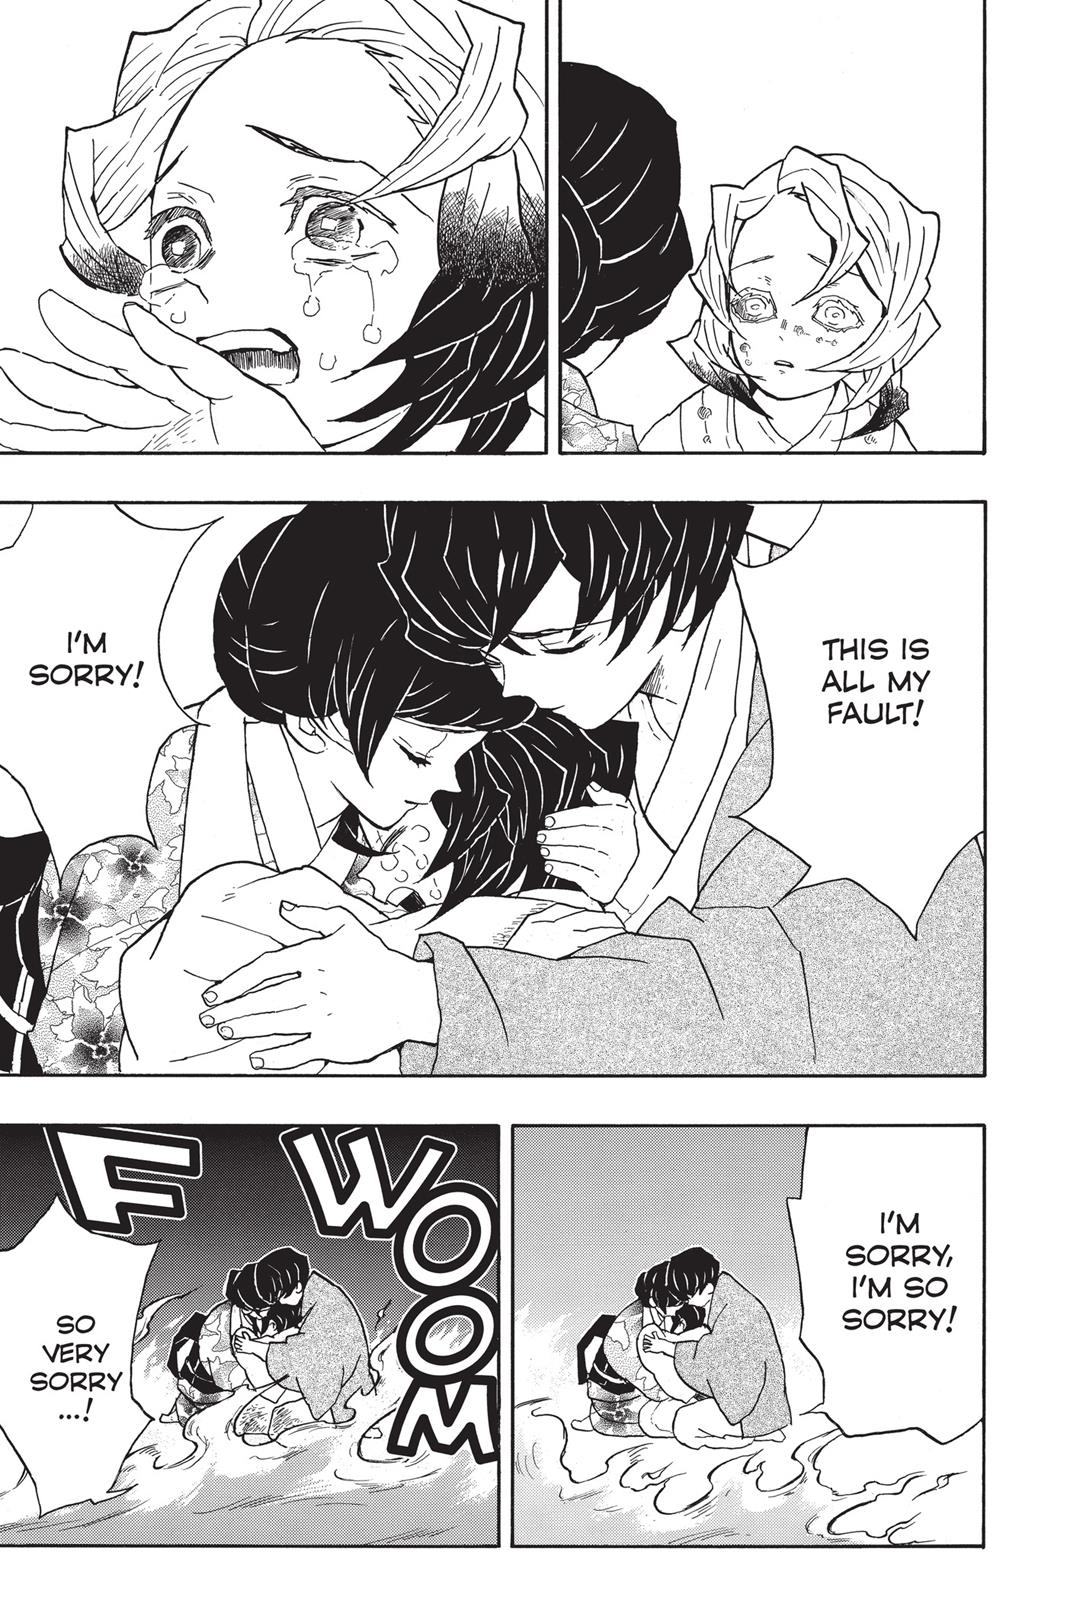 Demon Slayer Manga Manga Chapter - 43 - image 13